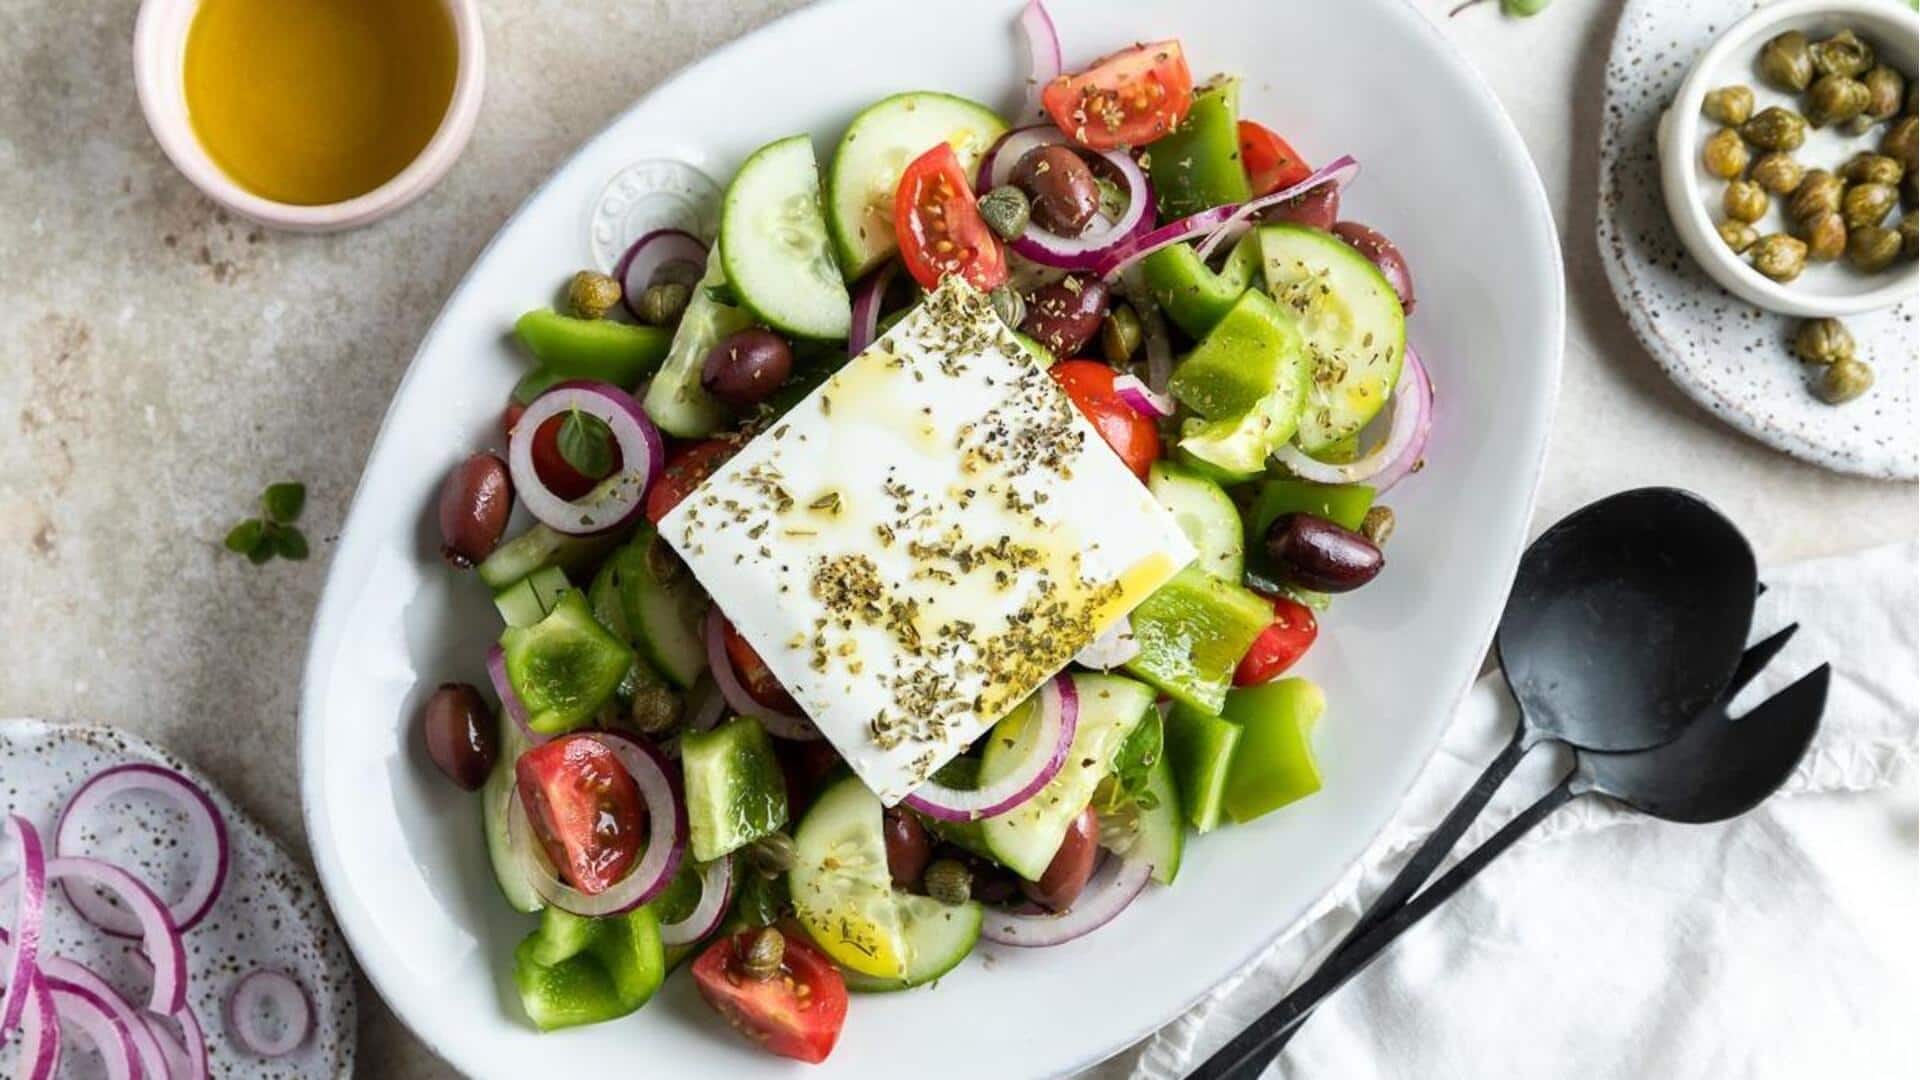 Coba resep salad horiatiki Yunani ini untuk hari yang penuh cita rasa